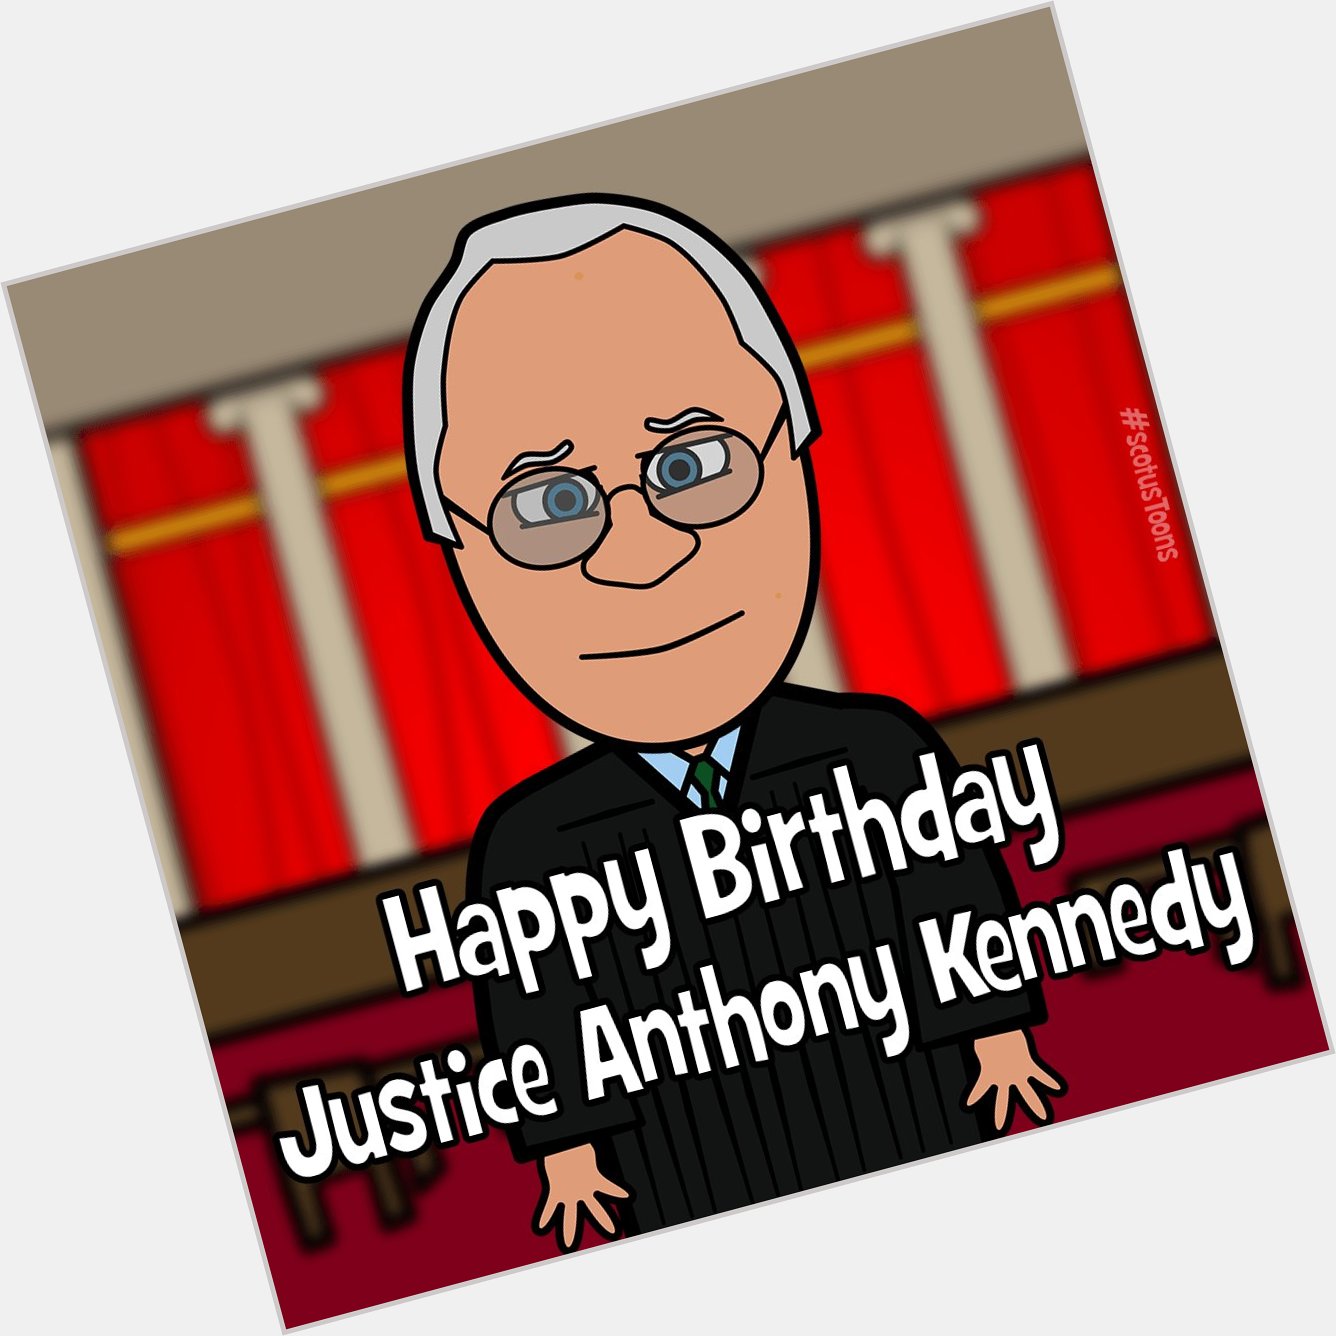 Happy Birthday Justice Anthony Kennedy!    